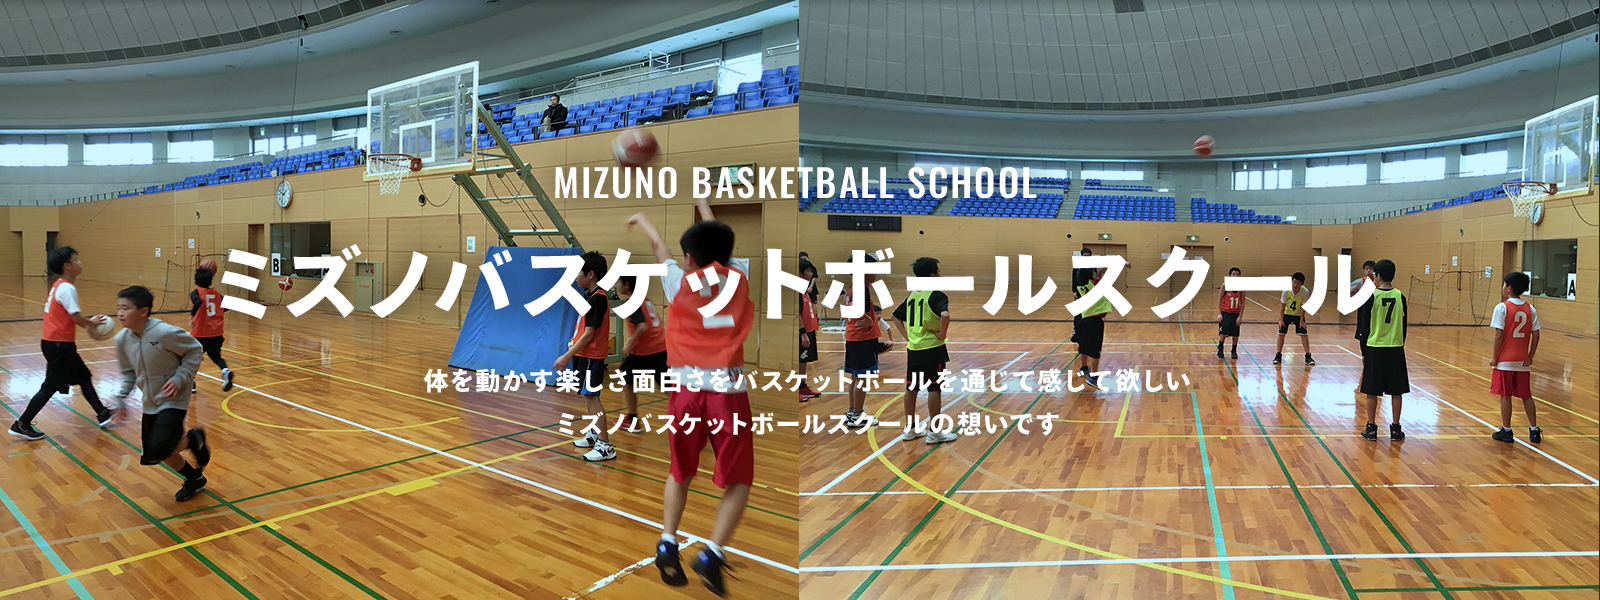 バスケットボールスクール | ミズノ